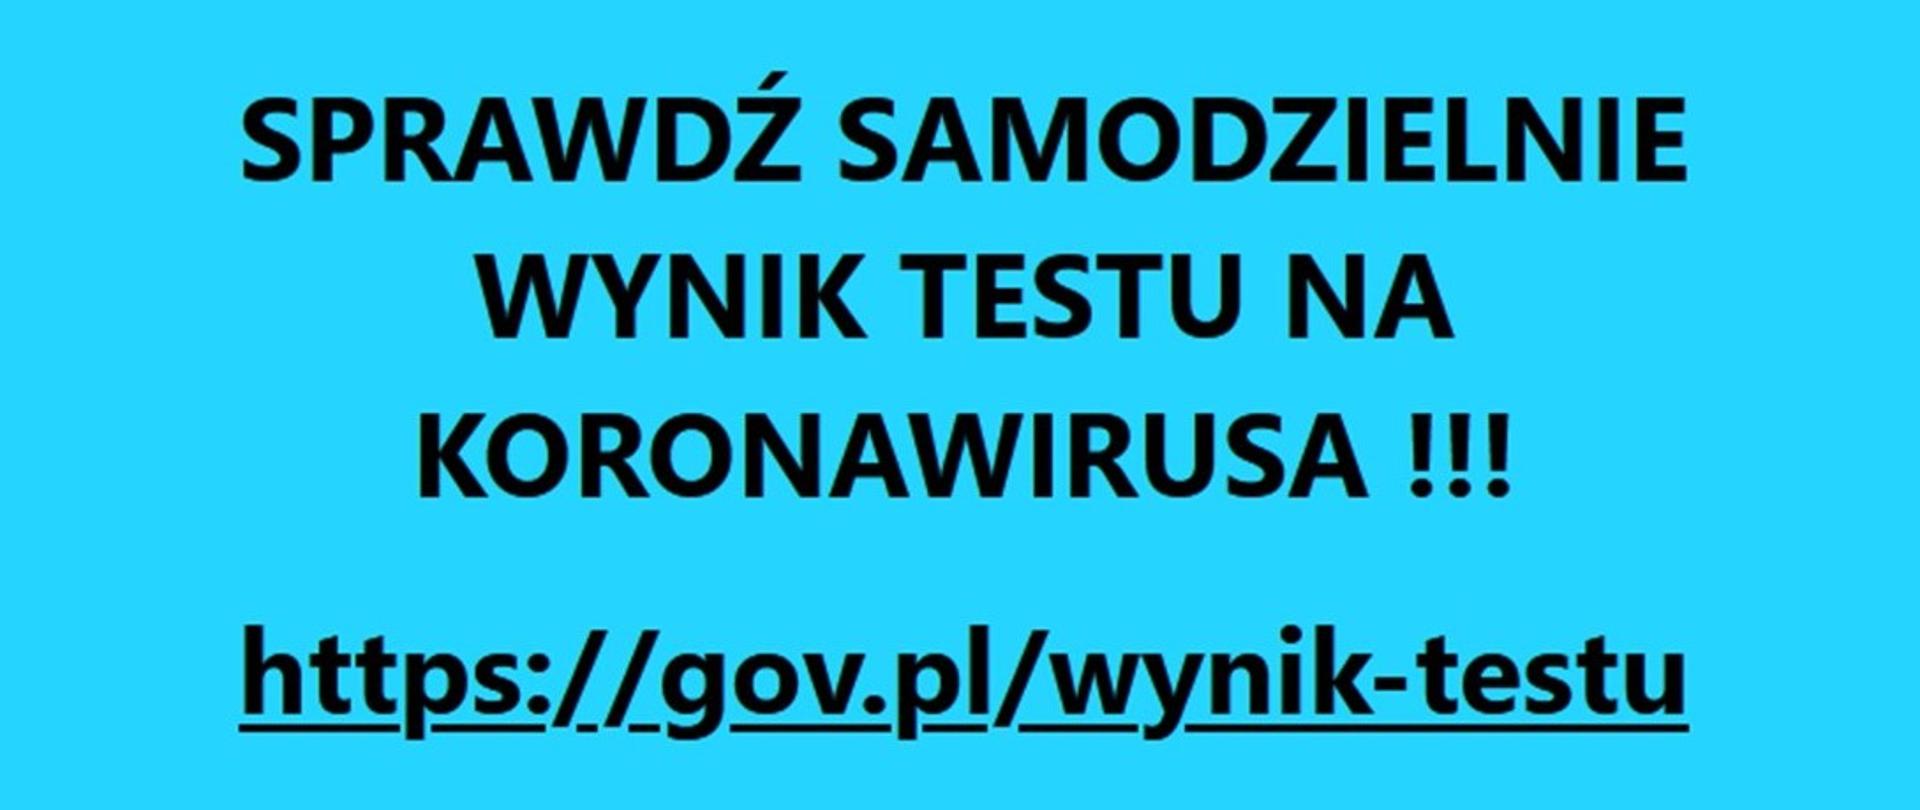 Prostokątne tło niebieskie, a na nim czarny napis: Sprawdź samodzielnie wynik testu na koronawirusa!!! https://gov.pl/wynik-testu